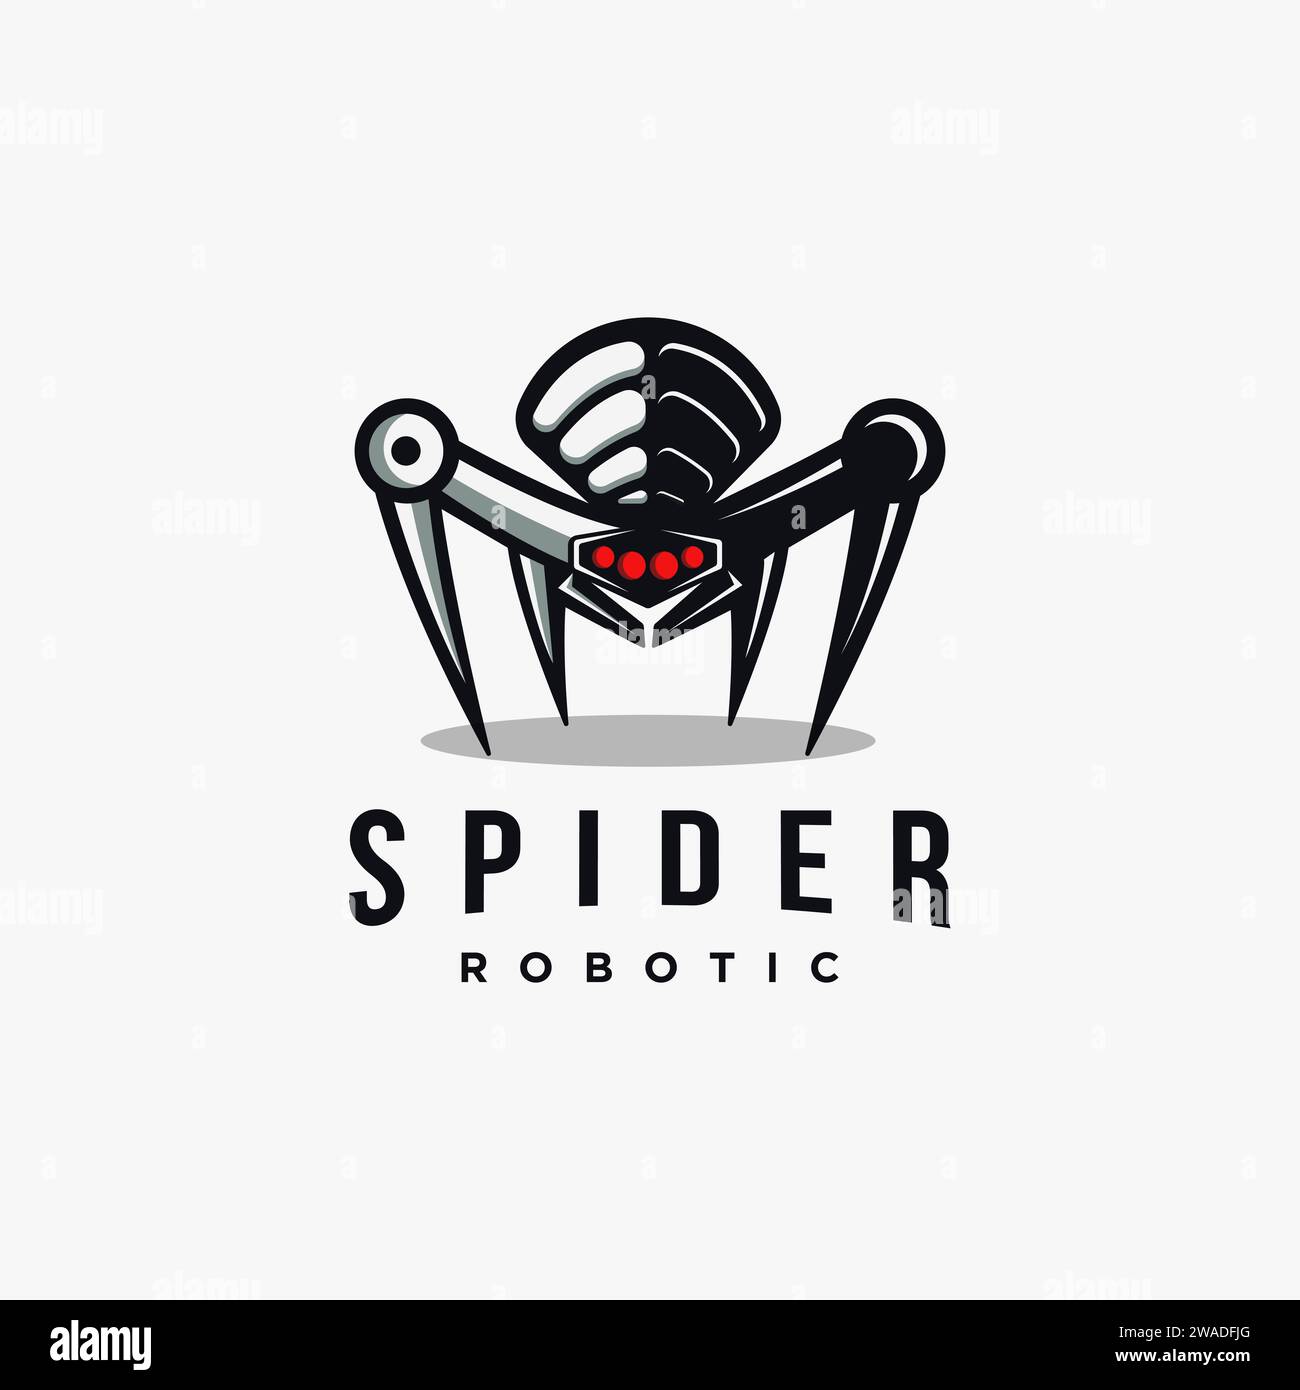 Mascot spider robot logo icon Stock Vector